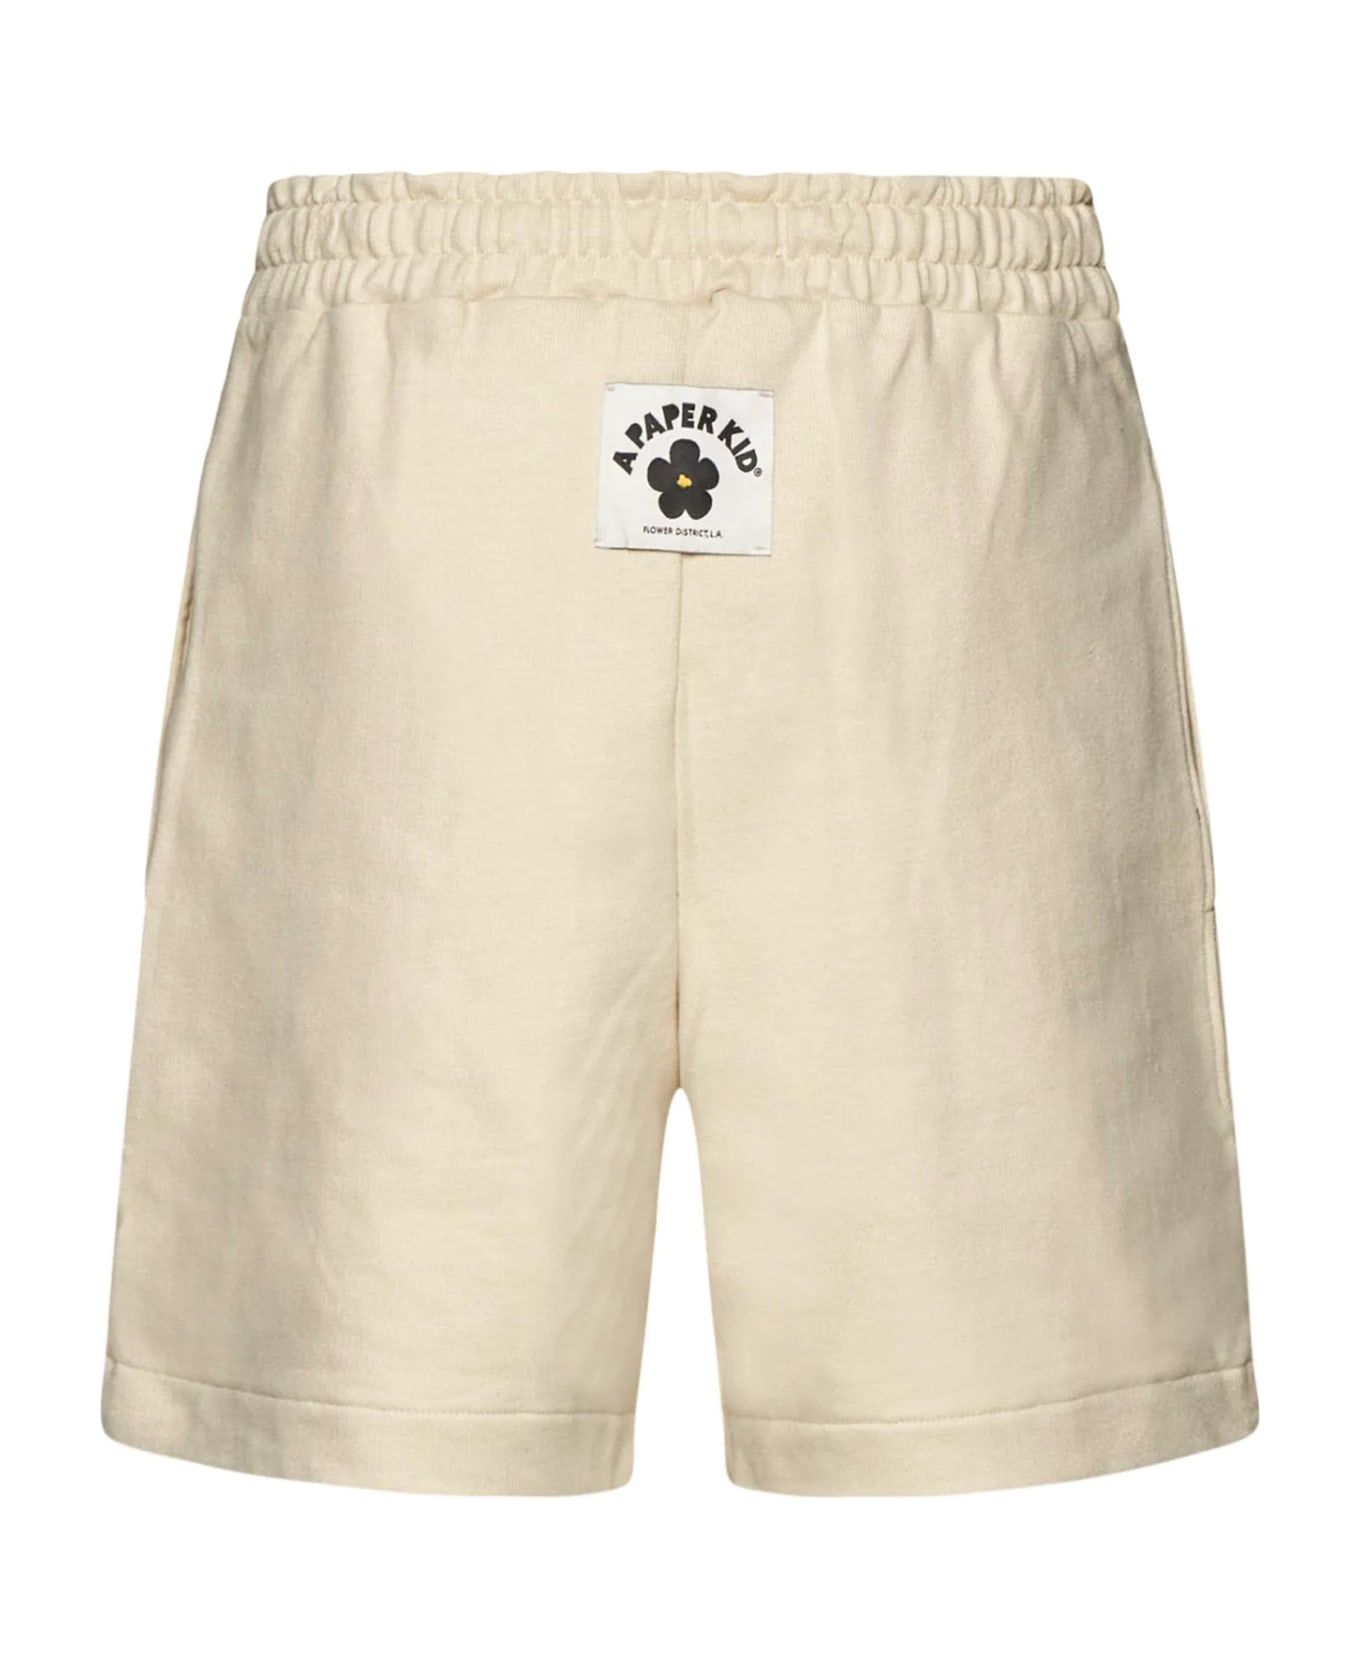 A Paper Kid Cream White Cotton Track Shorts - NEUTRALS ショートパンツ